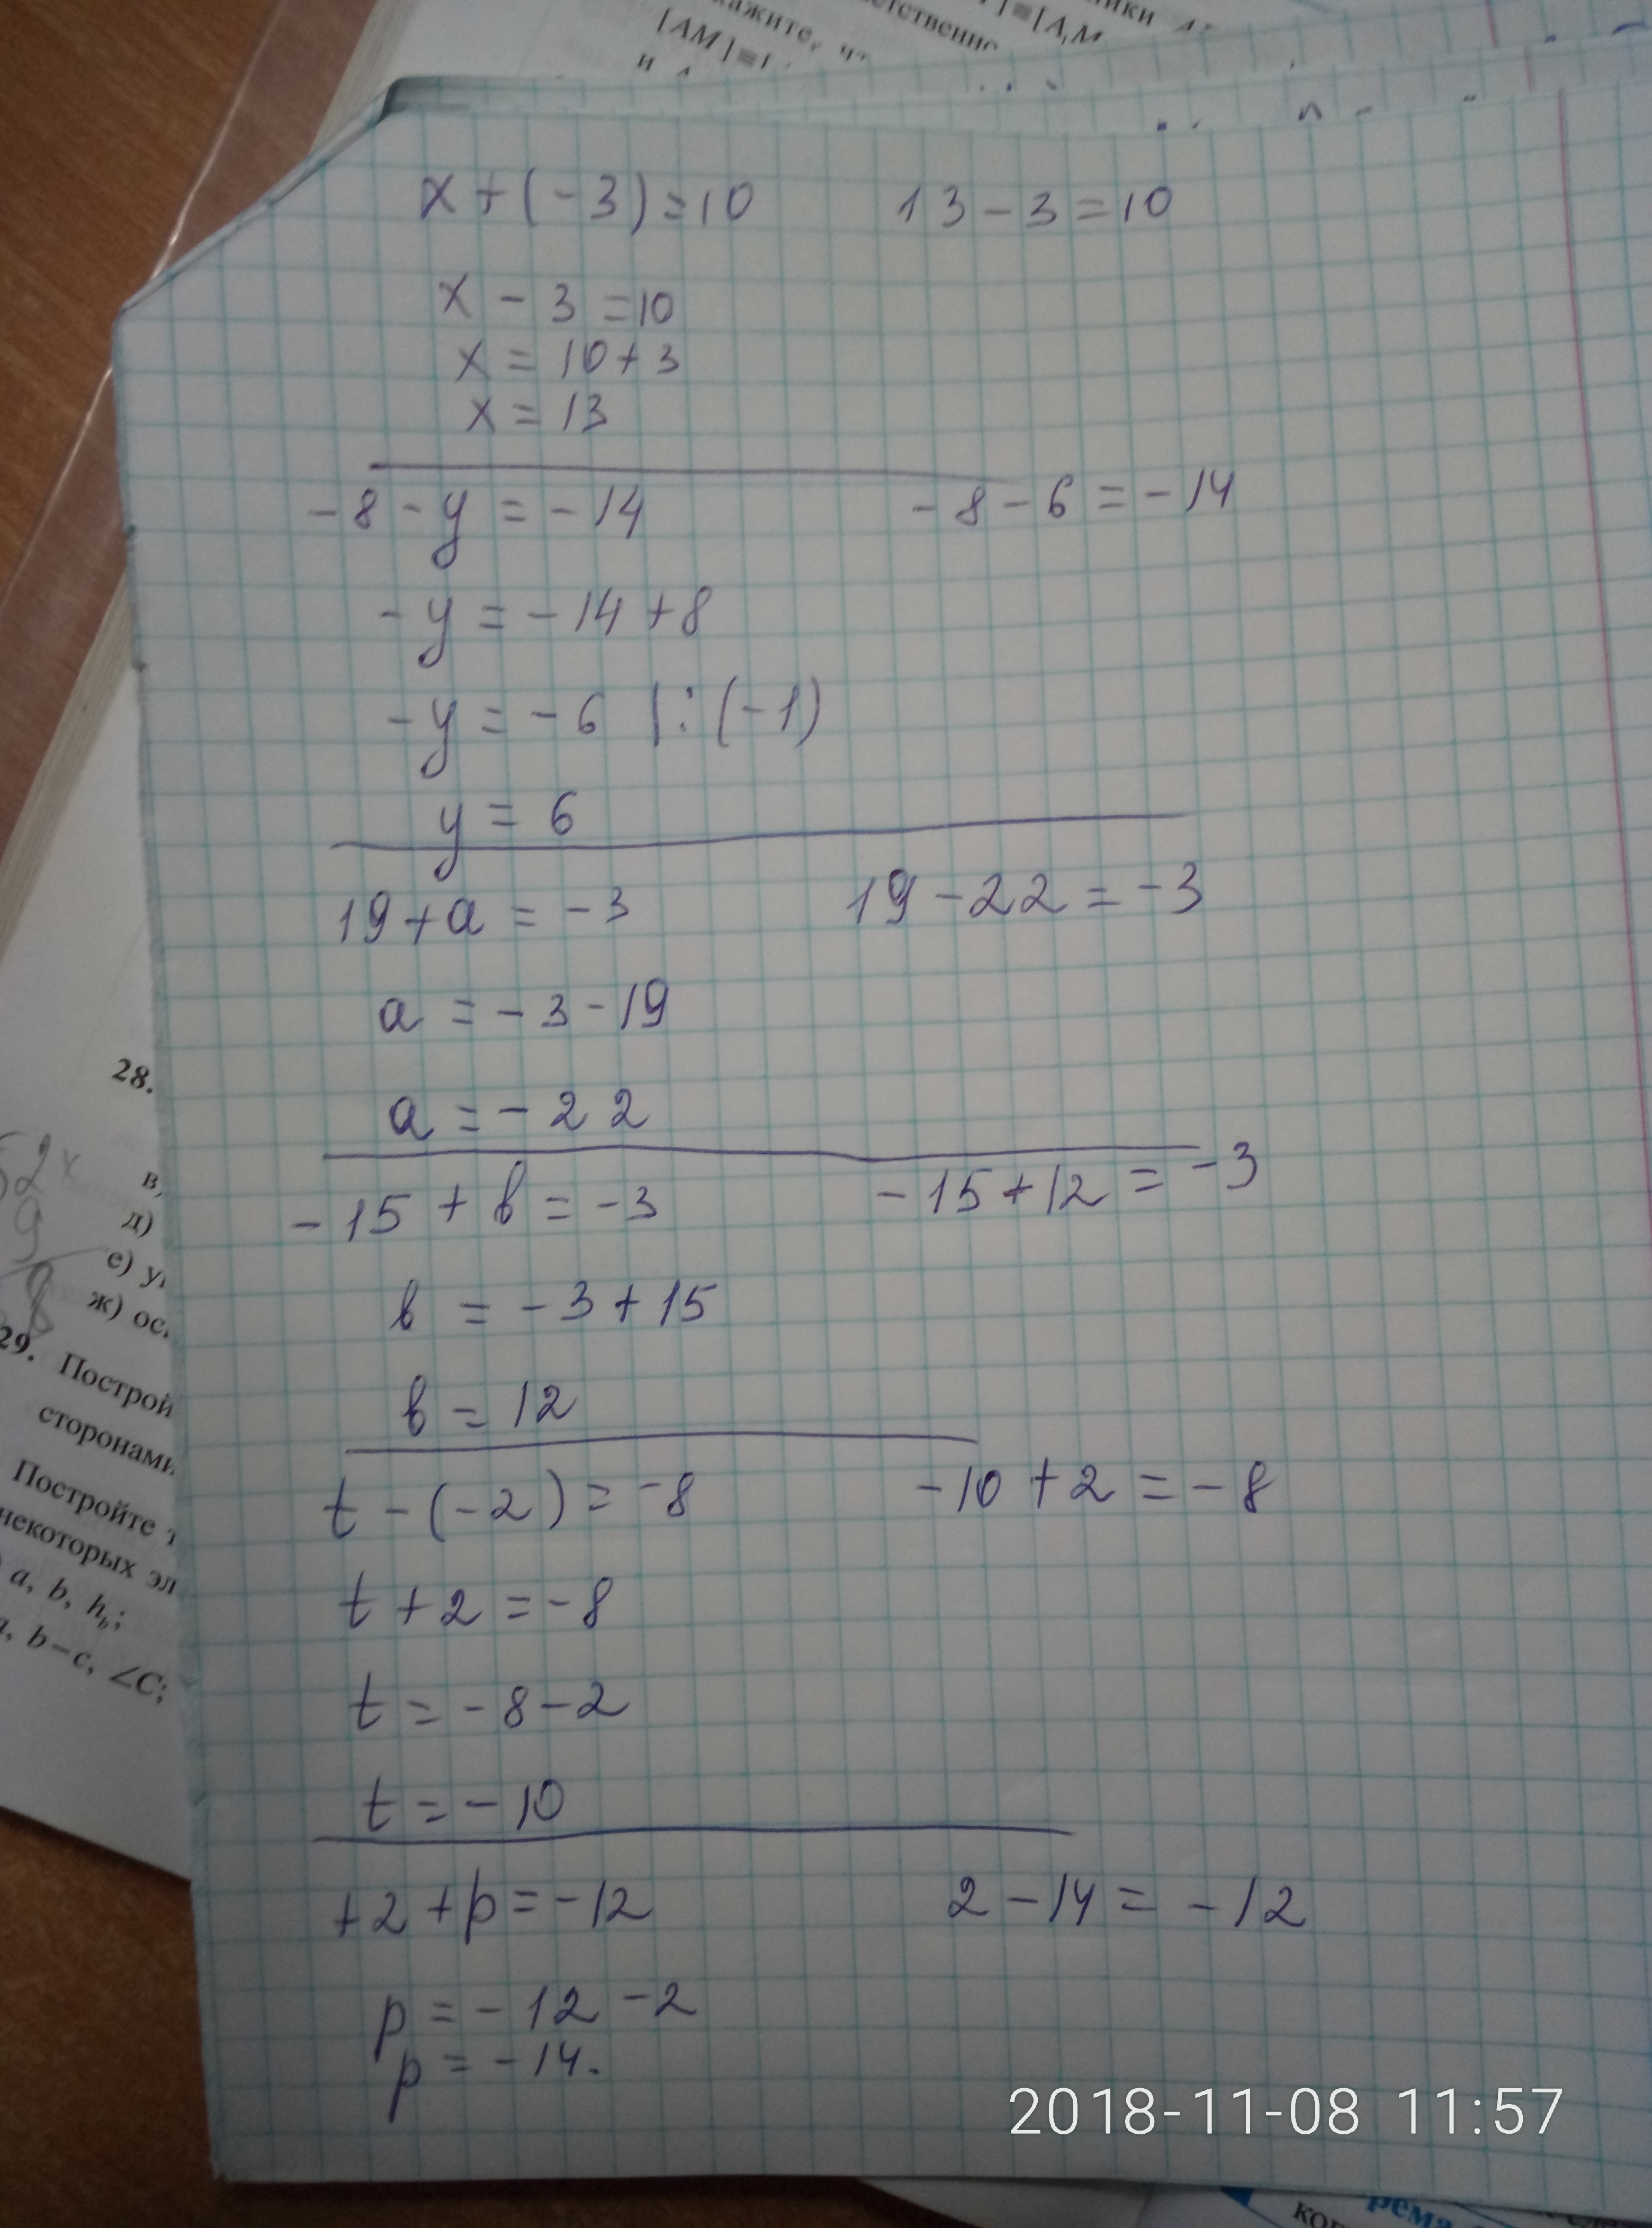 2 4x 19 1 8. Ответ 8= x=2. X^3-6x^2+3x+21=0 решение. 8/X-3-10/X 2. X-3 ответ.